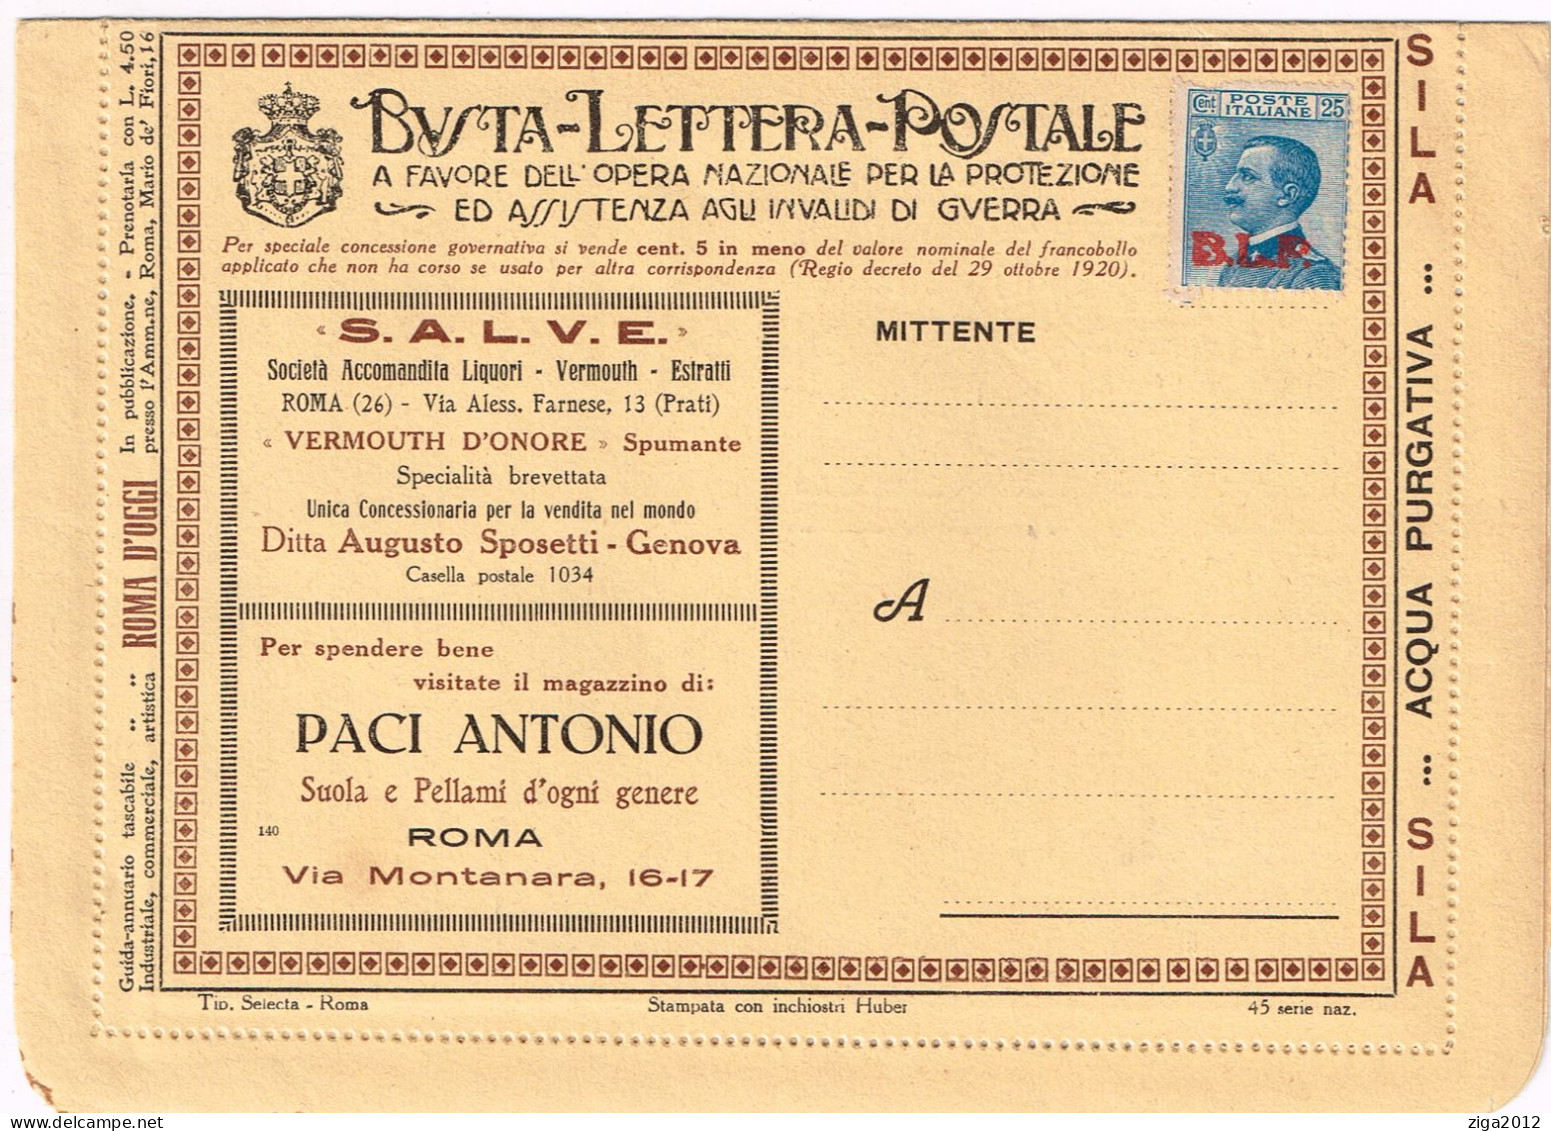 ITALY 1923 B.L.P. BUSTA LETTERA POSTALE CON C.25 III° TIPO NUOVA E COMPLETA - Reclame